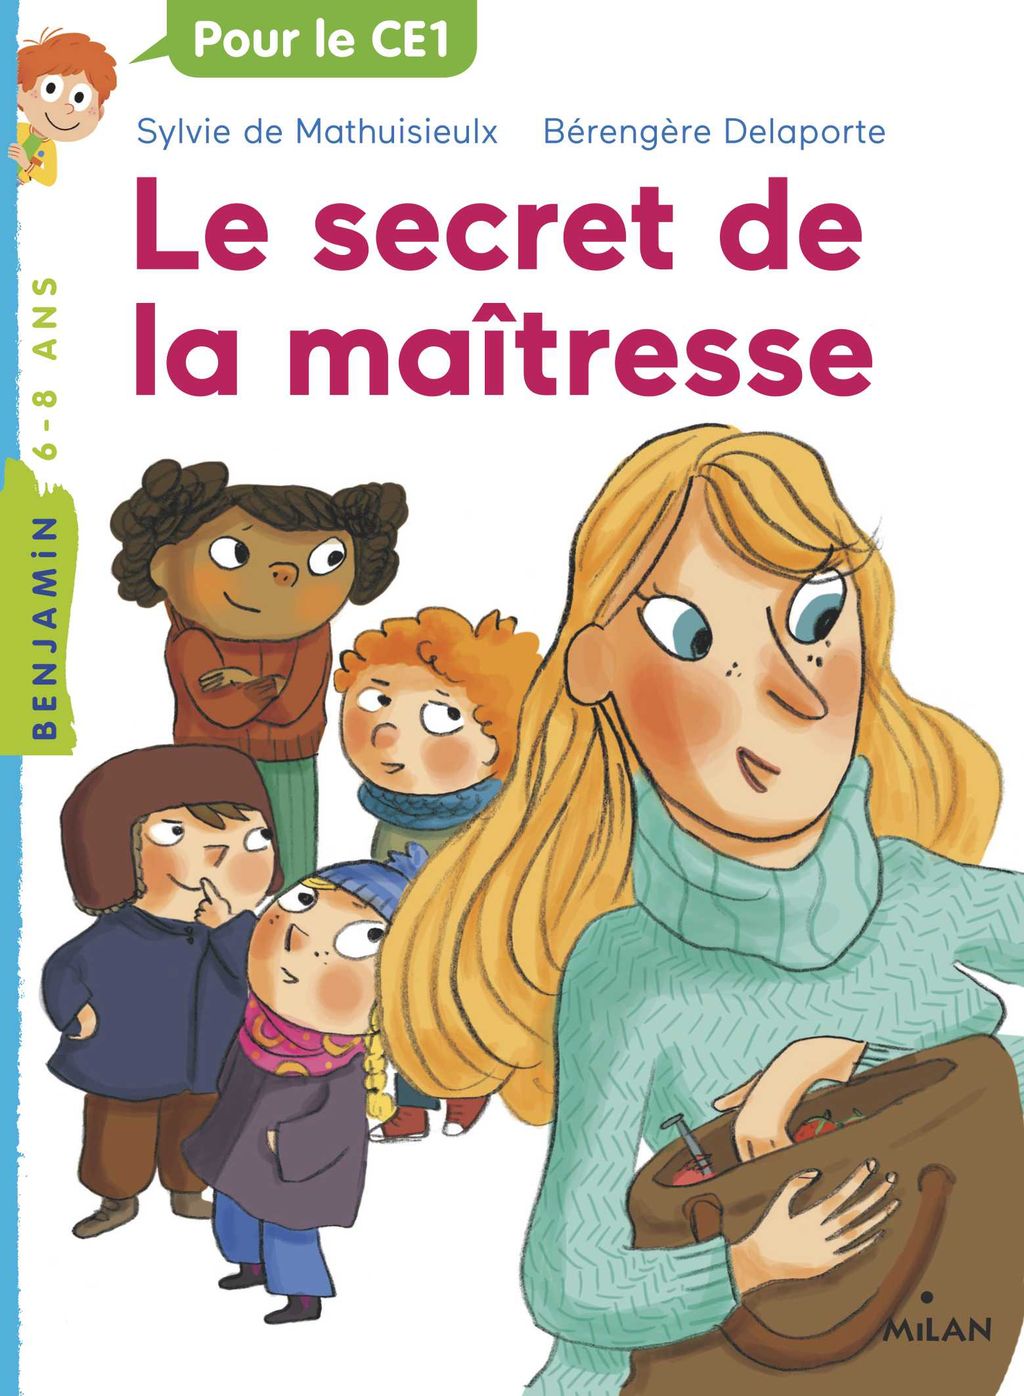 « Le secret de la maîtresse » cover